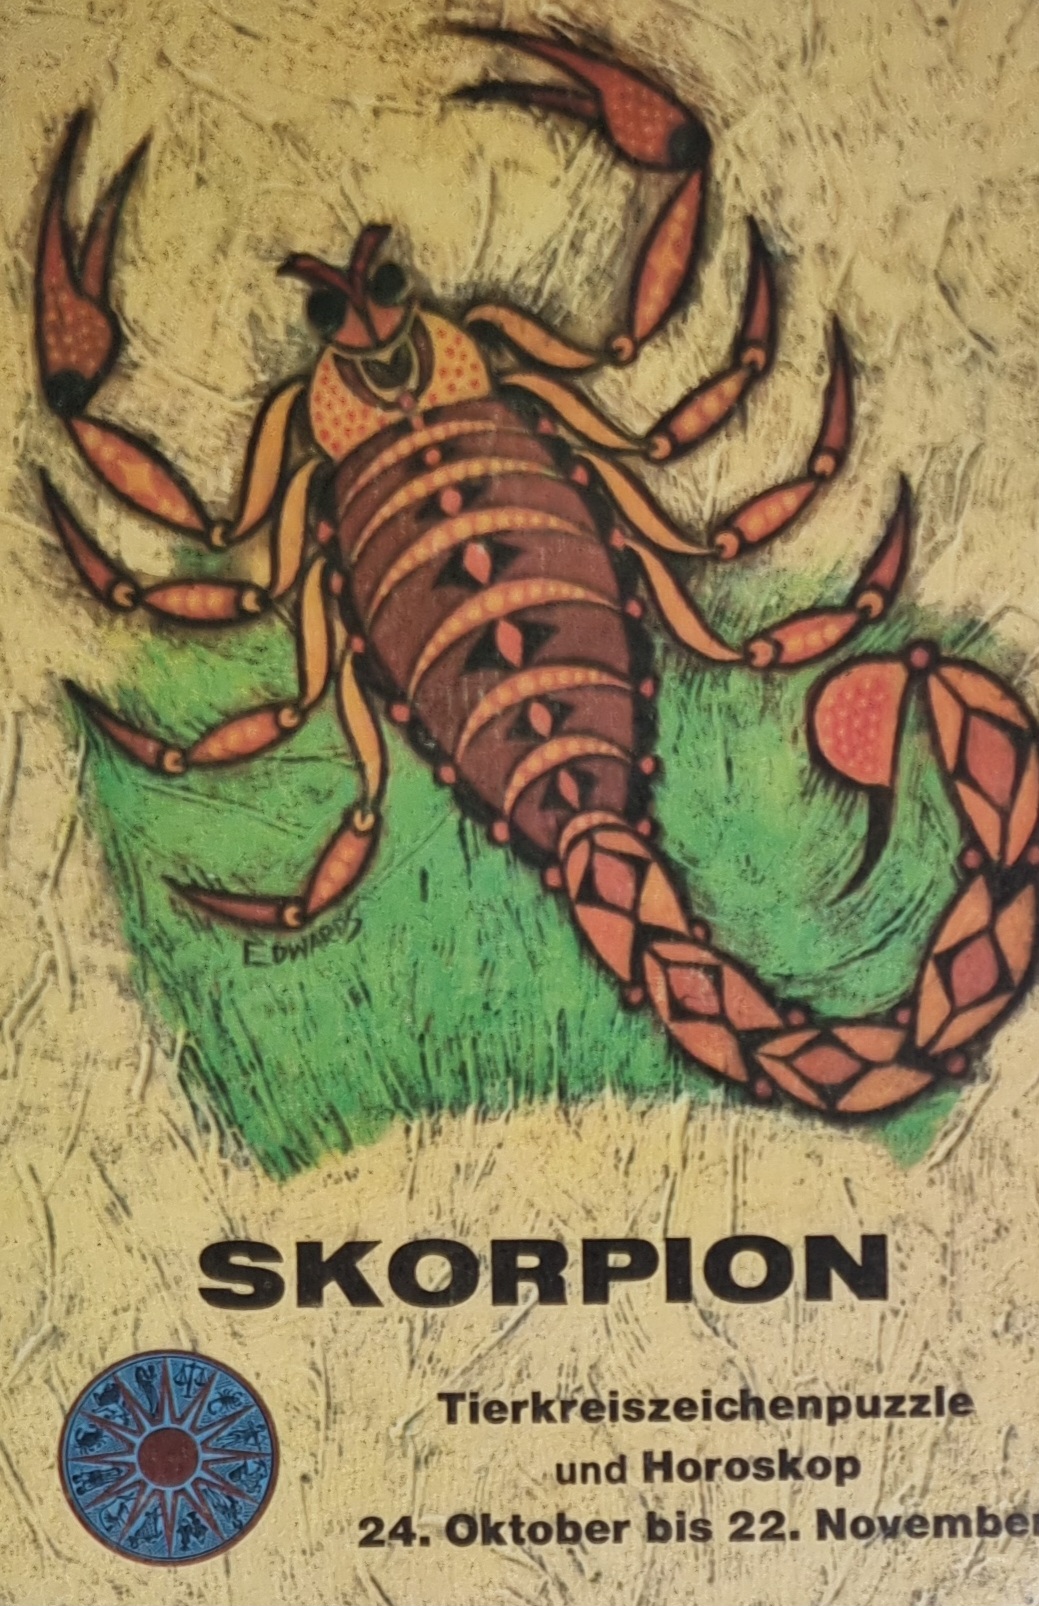 MB Tierkreiszeichenpuzzle und Horoskop Skorpion 125 Teile 3088D